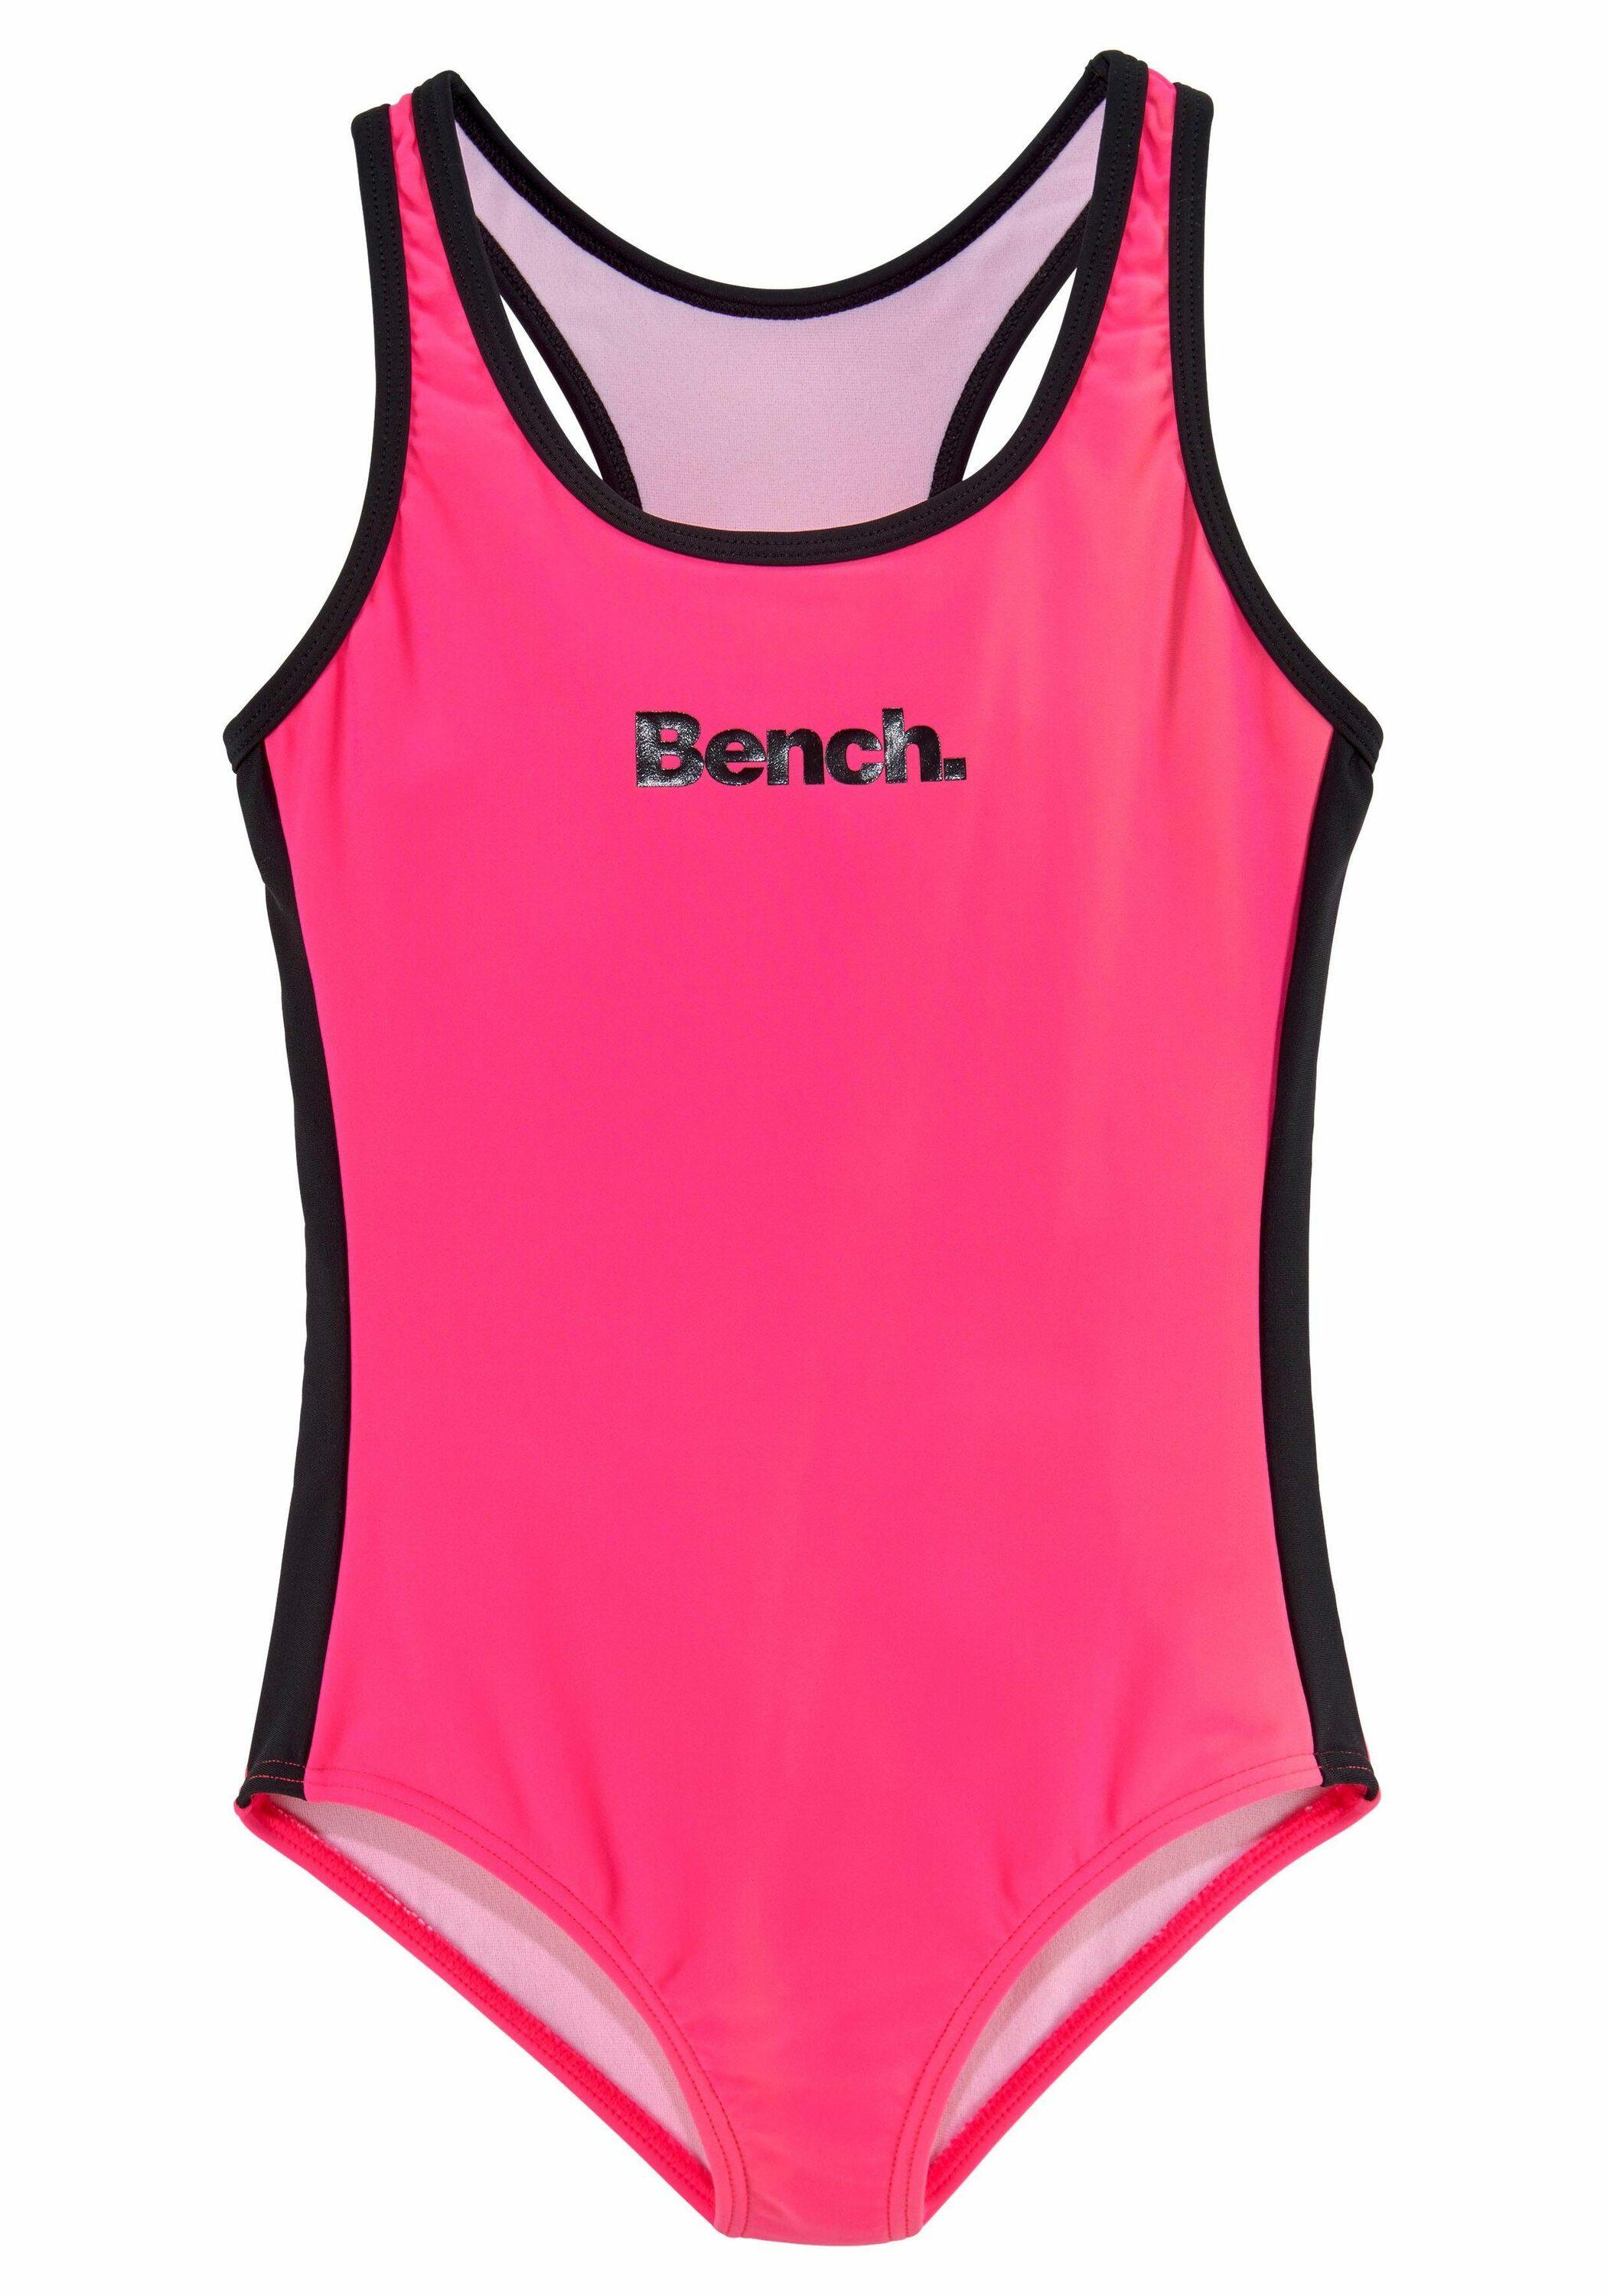 Bench Badeanzug pink-schwarz SportScheck Shop kaufen Online von Damen im